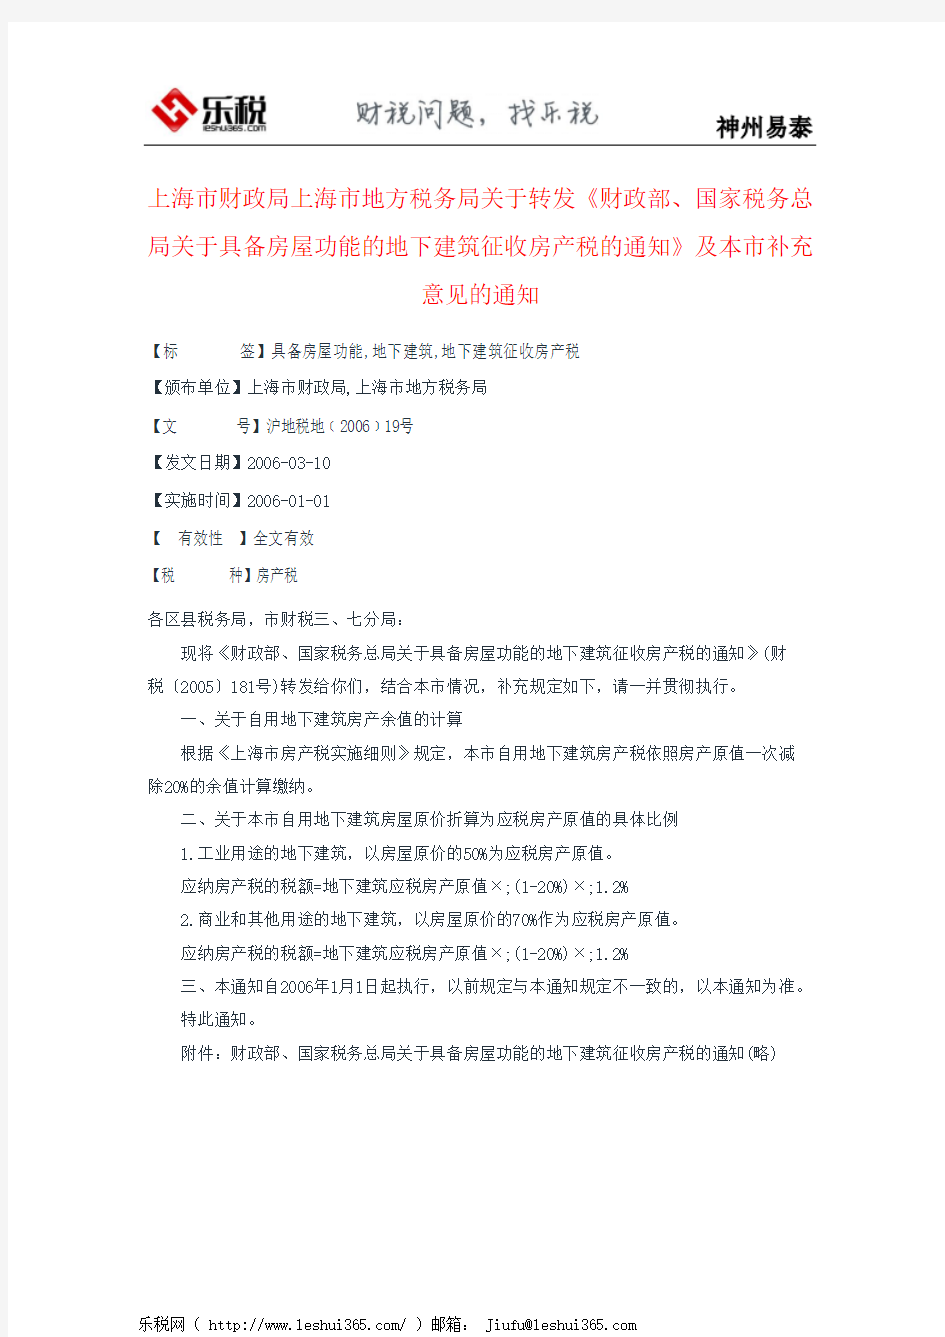 上海市财政局上海市地方税务局关于转发《财政部、国家税务总局关